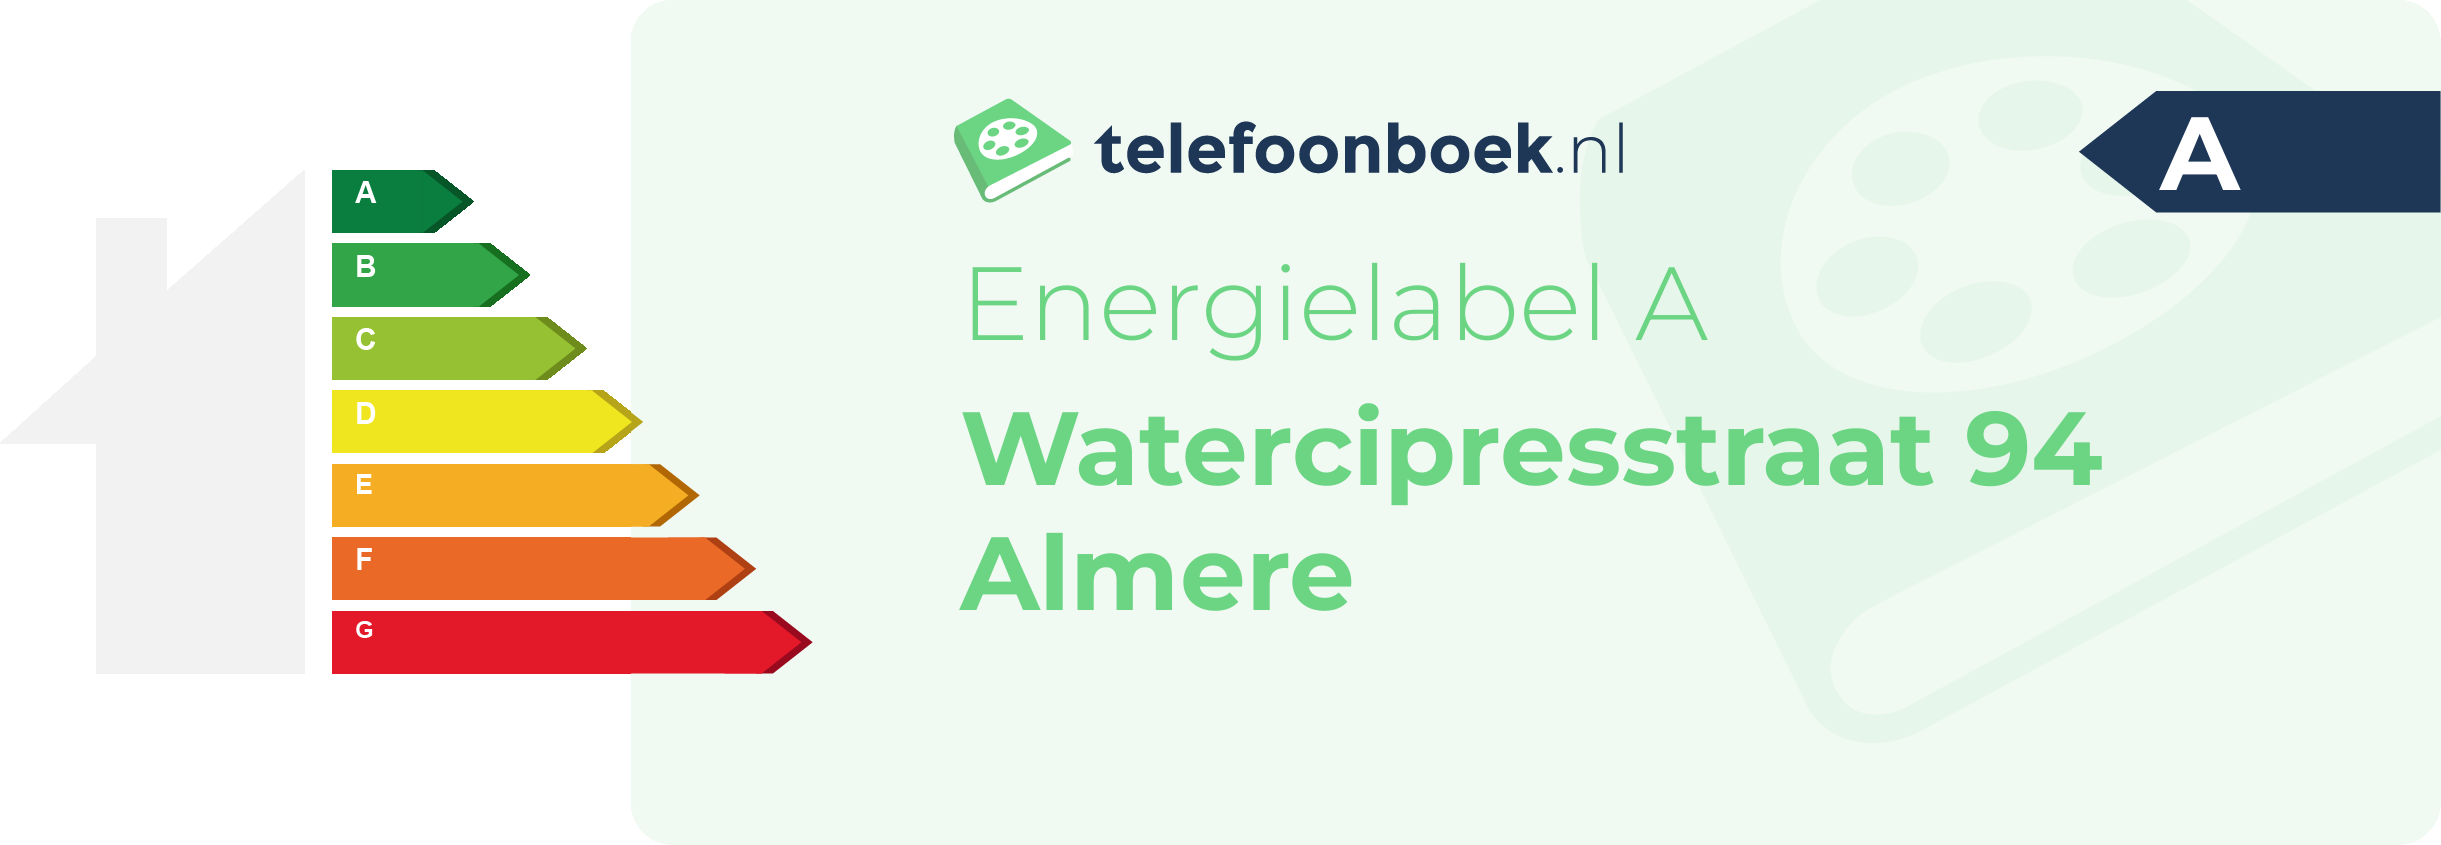 Energielabel Watercipresstraat 94 Almere